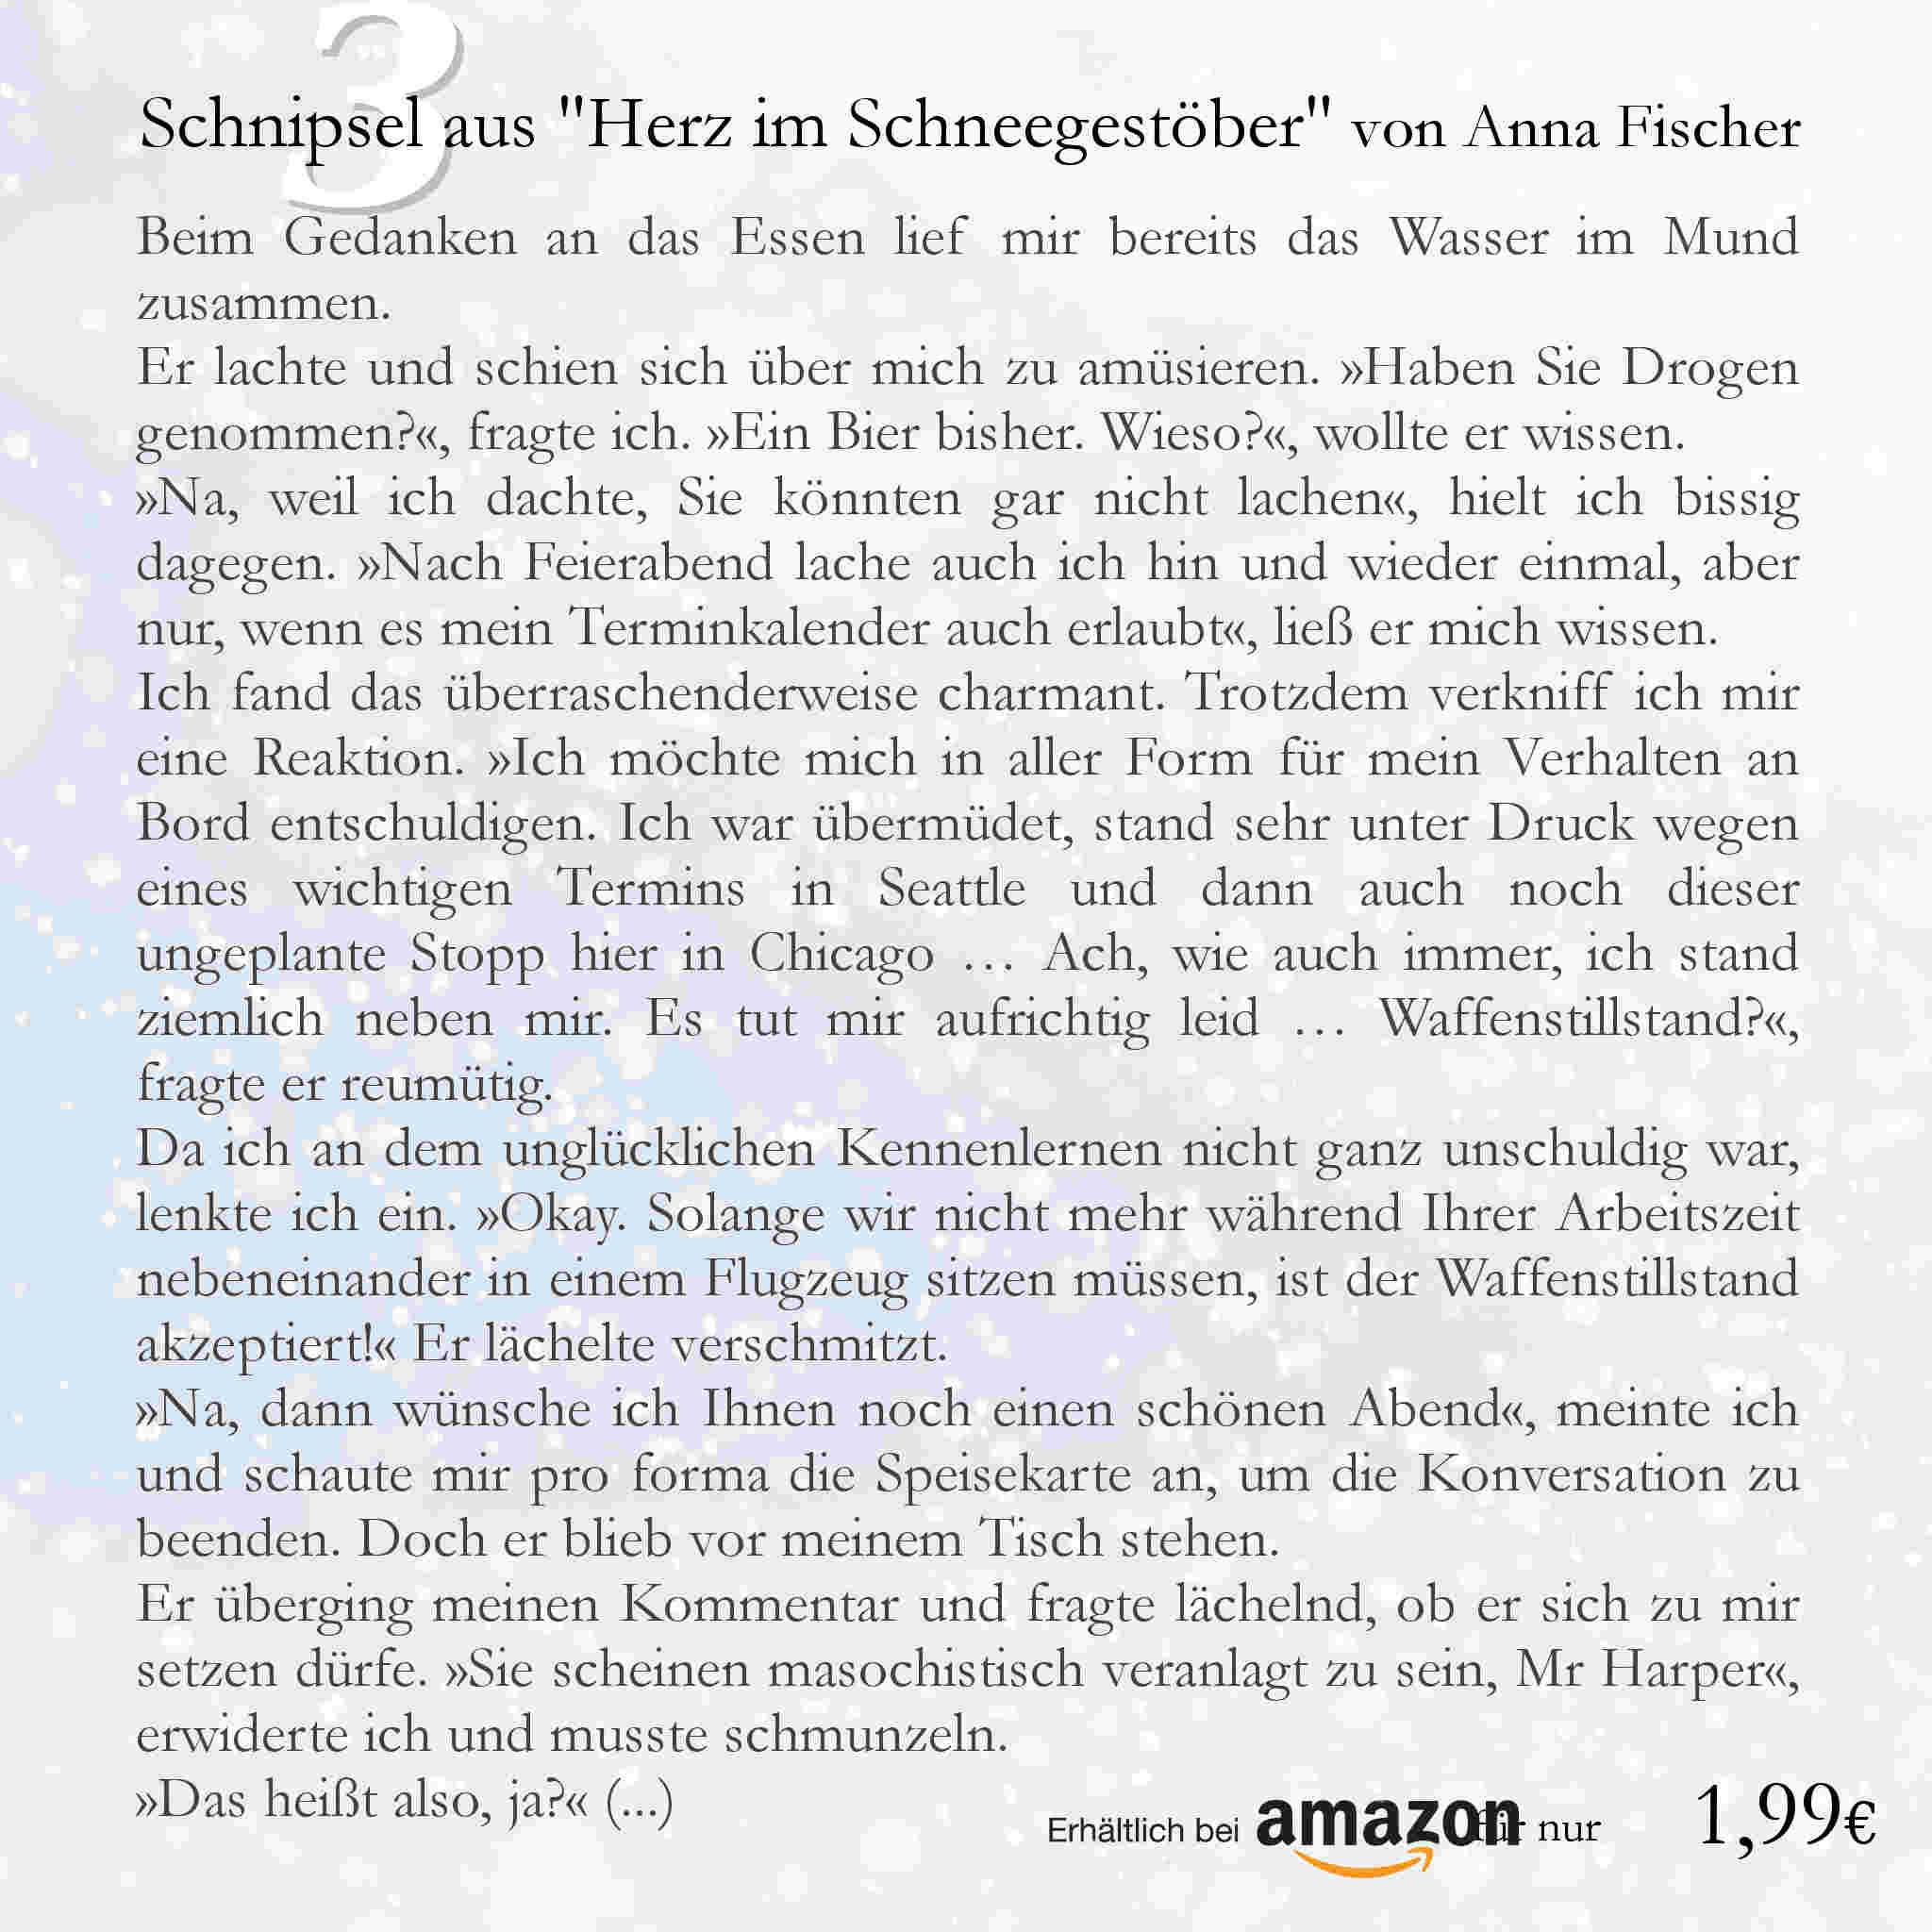 Schnipsel aus dem Buch 'Herz im Schneegestöber' von 'Anna Fischer'